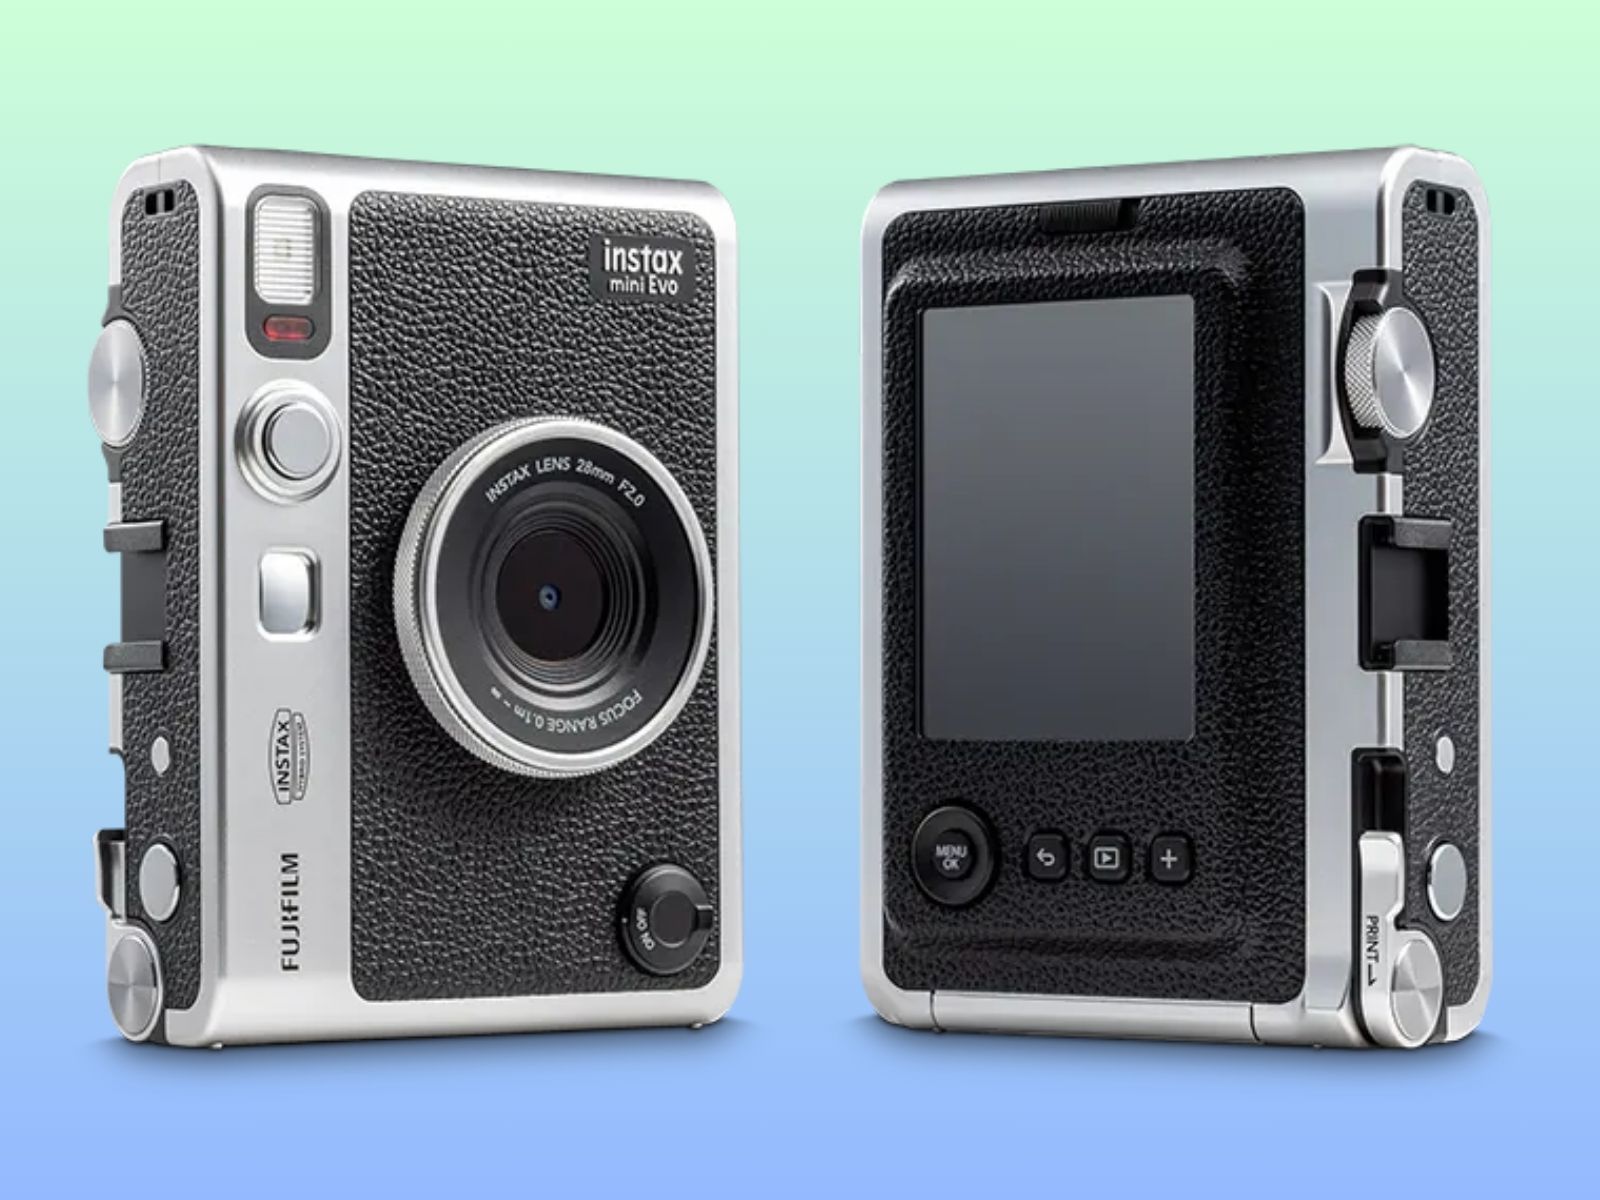 Fujifilm Instax Mini Evo Vs Instax Mini LiPlay: Side by Side Image  Comparison